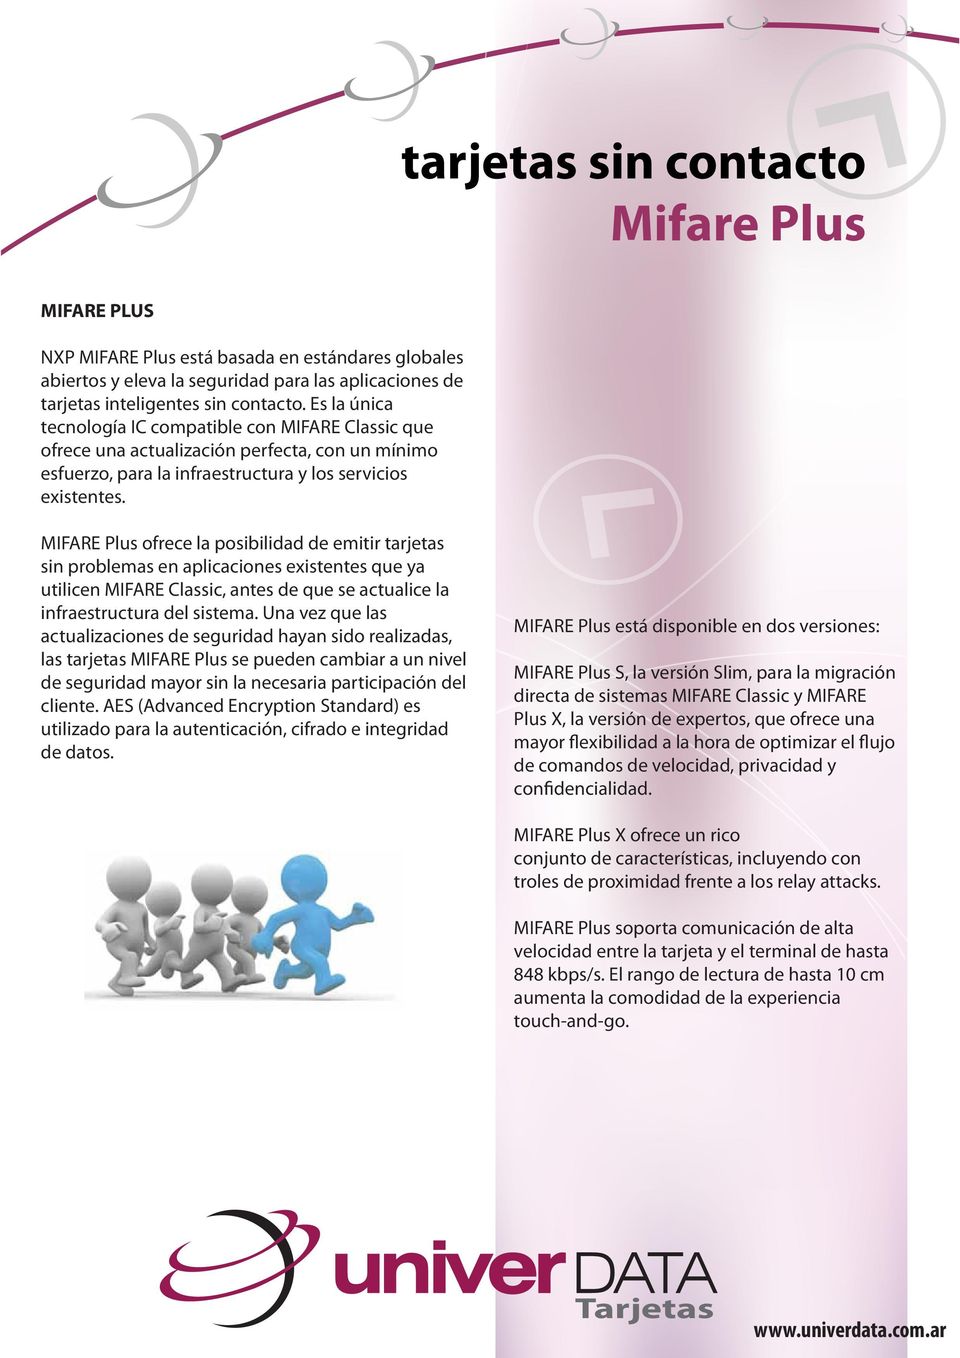 MIFARE Plus ofrece la posibilidad de emitir tarjetas sin problemas en aplicaciones existentes que ya utilicen MIFARE Classic, antes de que se actualice la infraestructura del sistema.